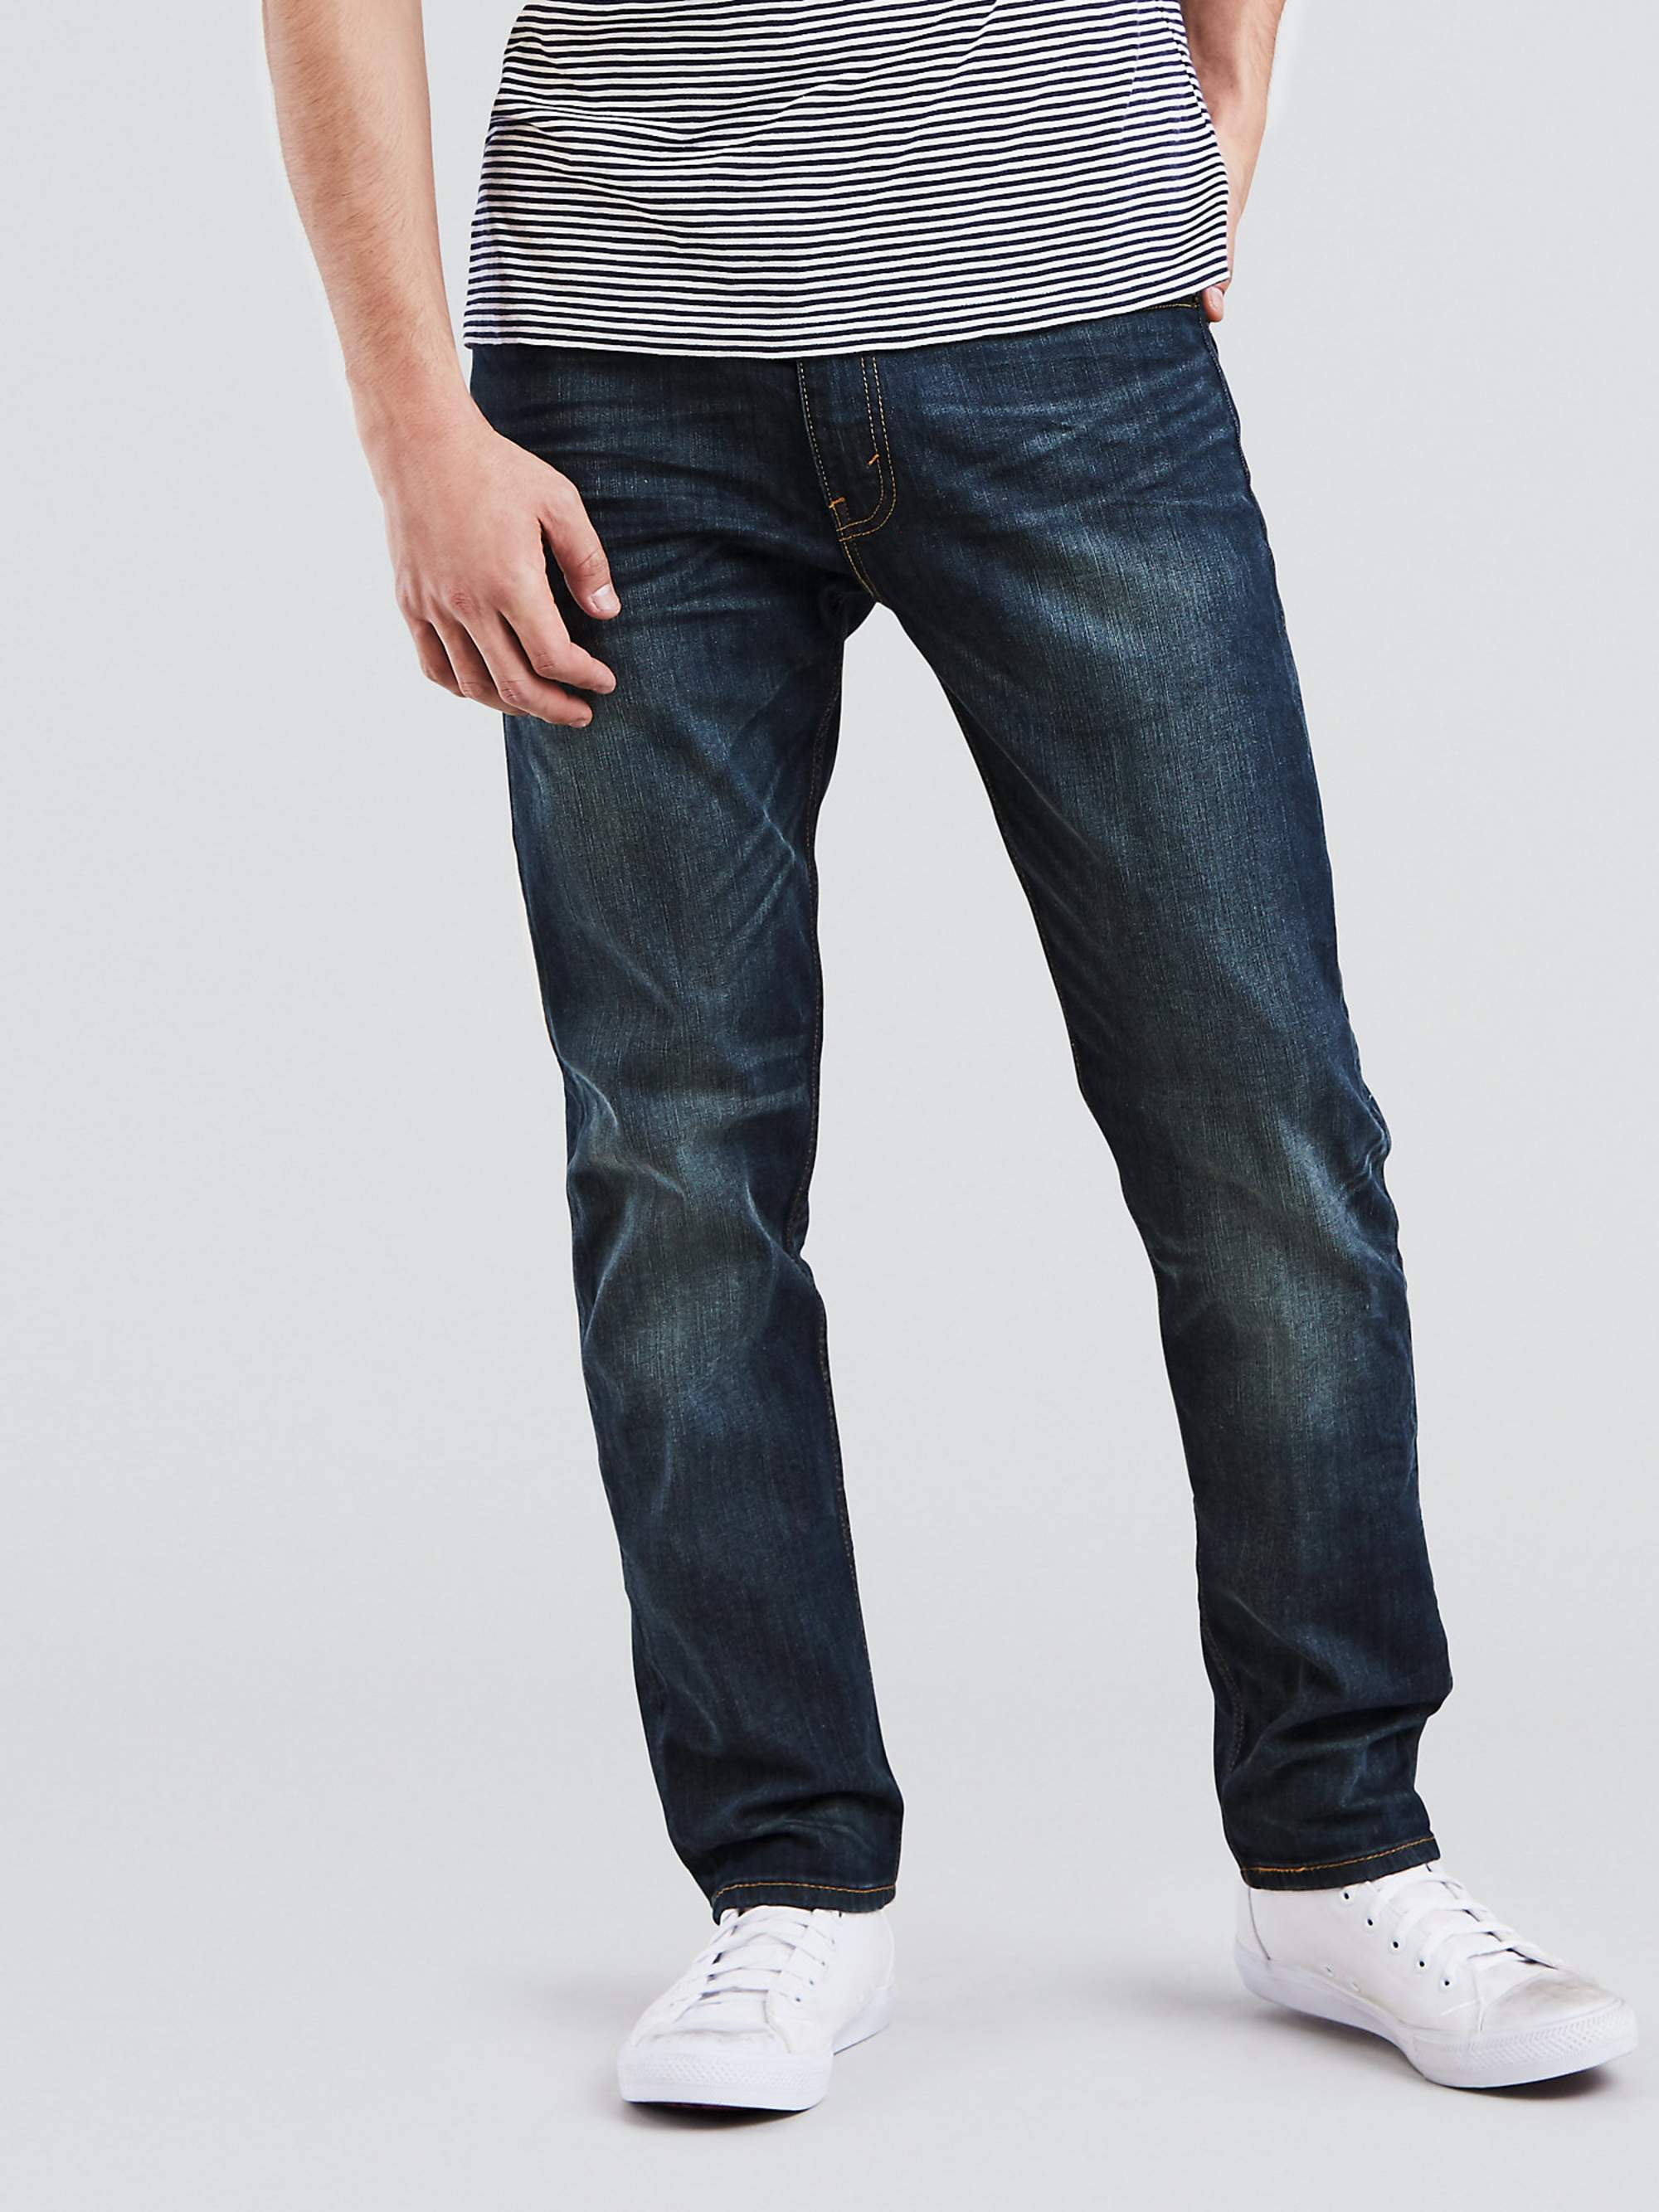 Spanning woede verkeer Levi's Mens 502 Regular Fit Stretch Tapered Jeans - Walmart.com